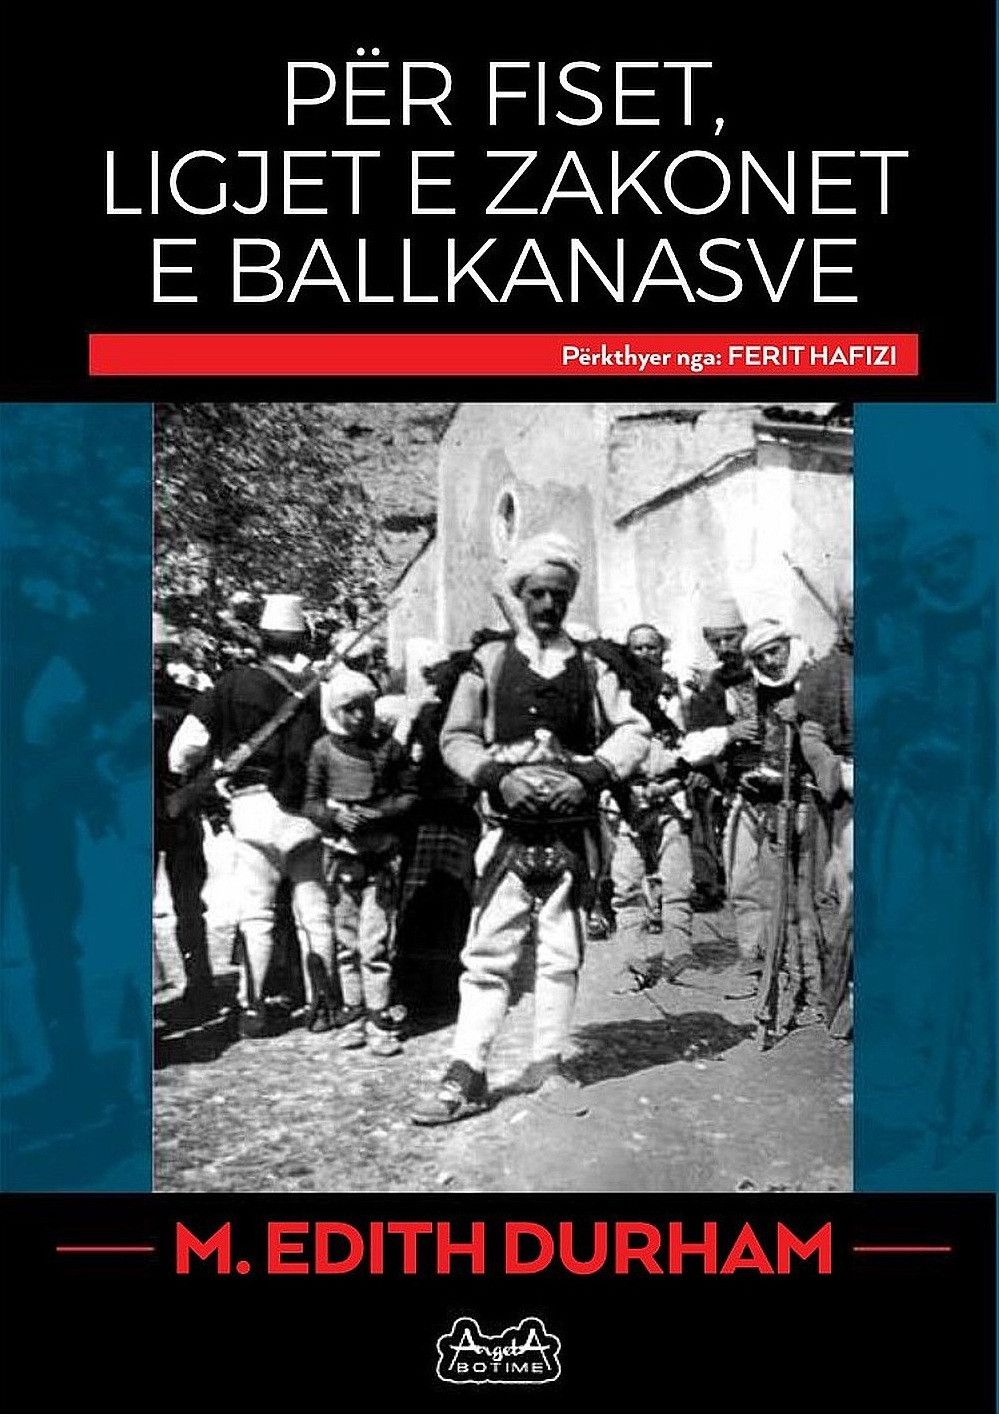 Per fiset, ligjet e zakonet e Ballkanasve